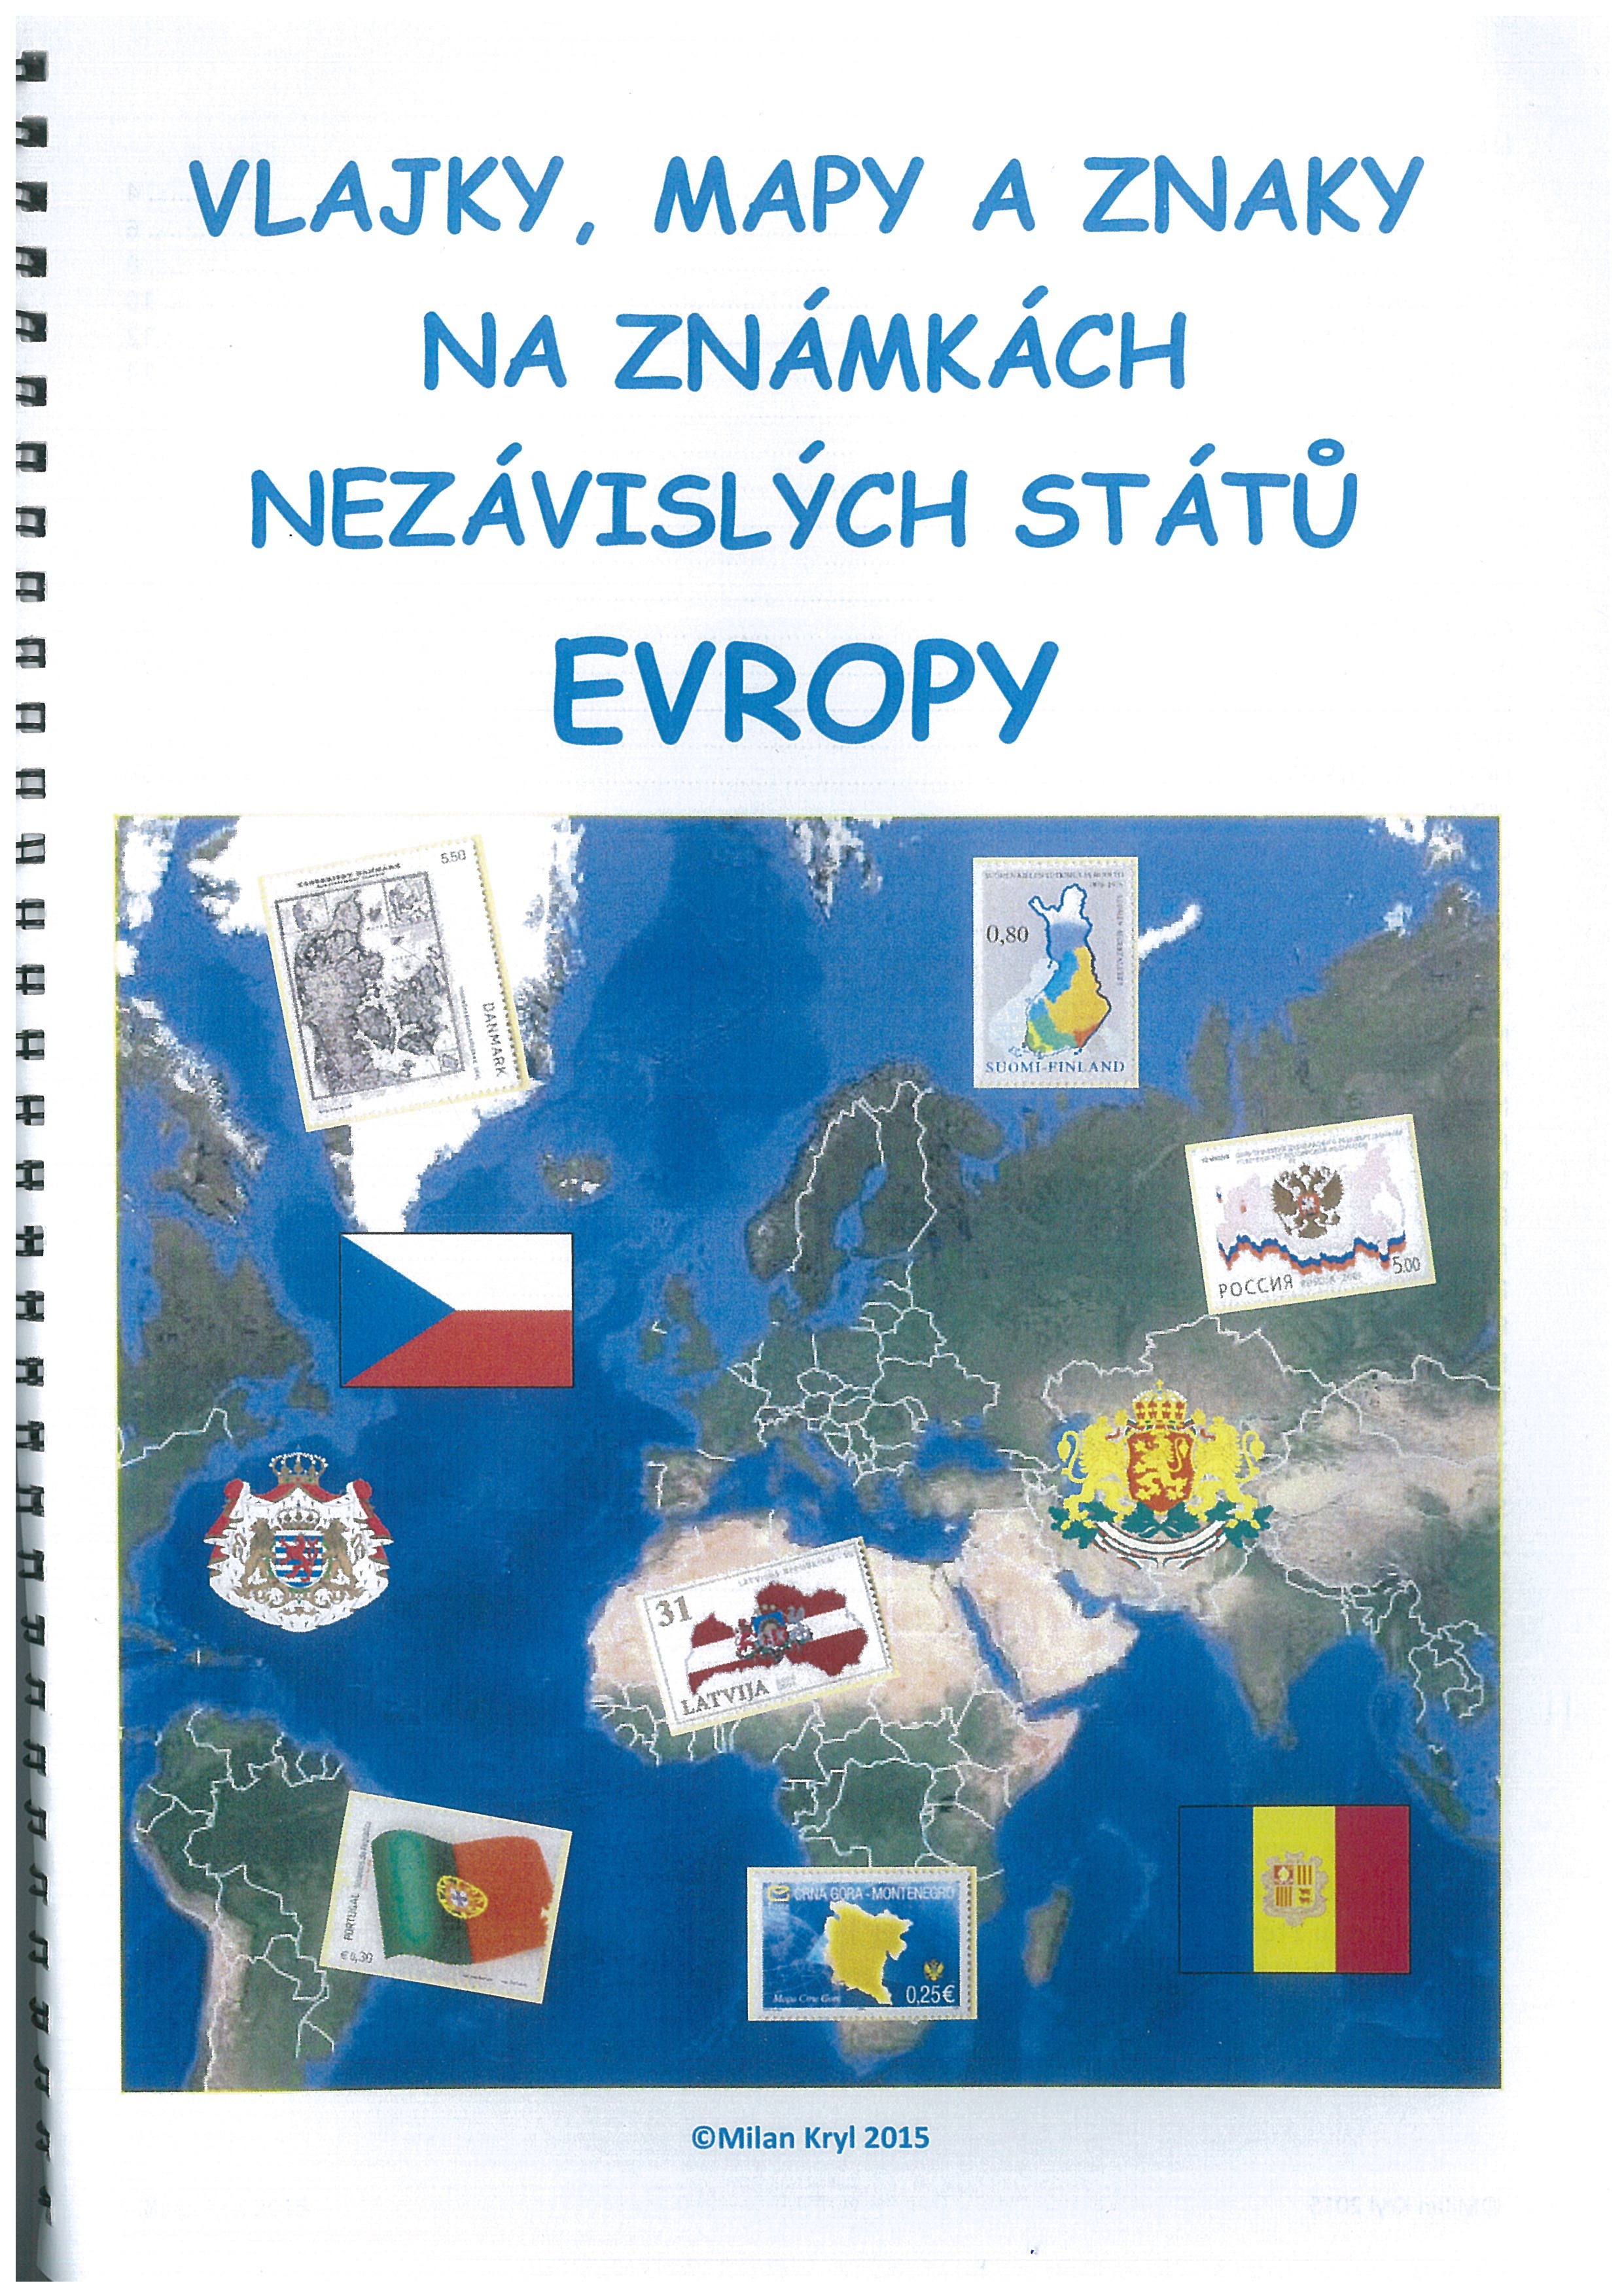 Evropa - vlajky, mapy a znaky na zn. nezáv. států Evropy